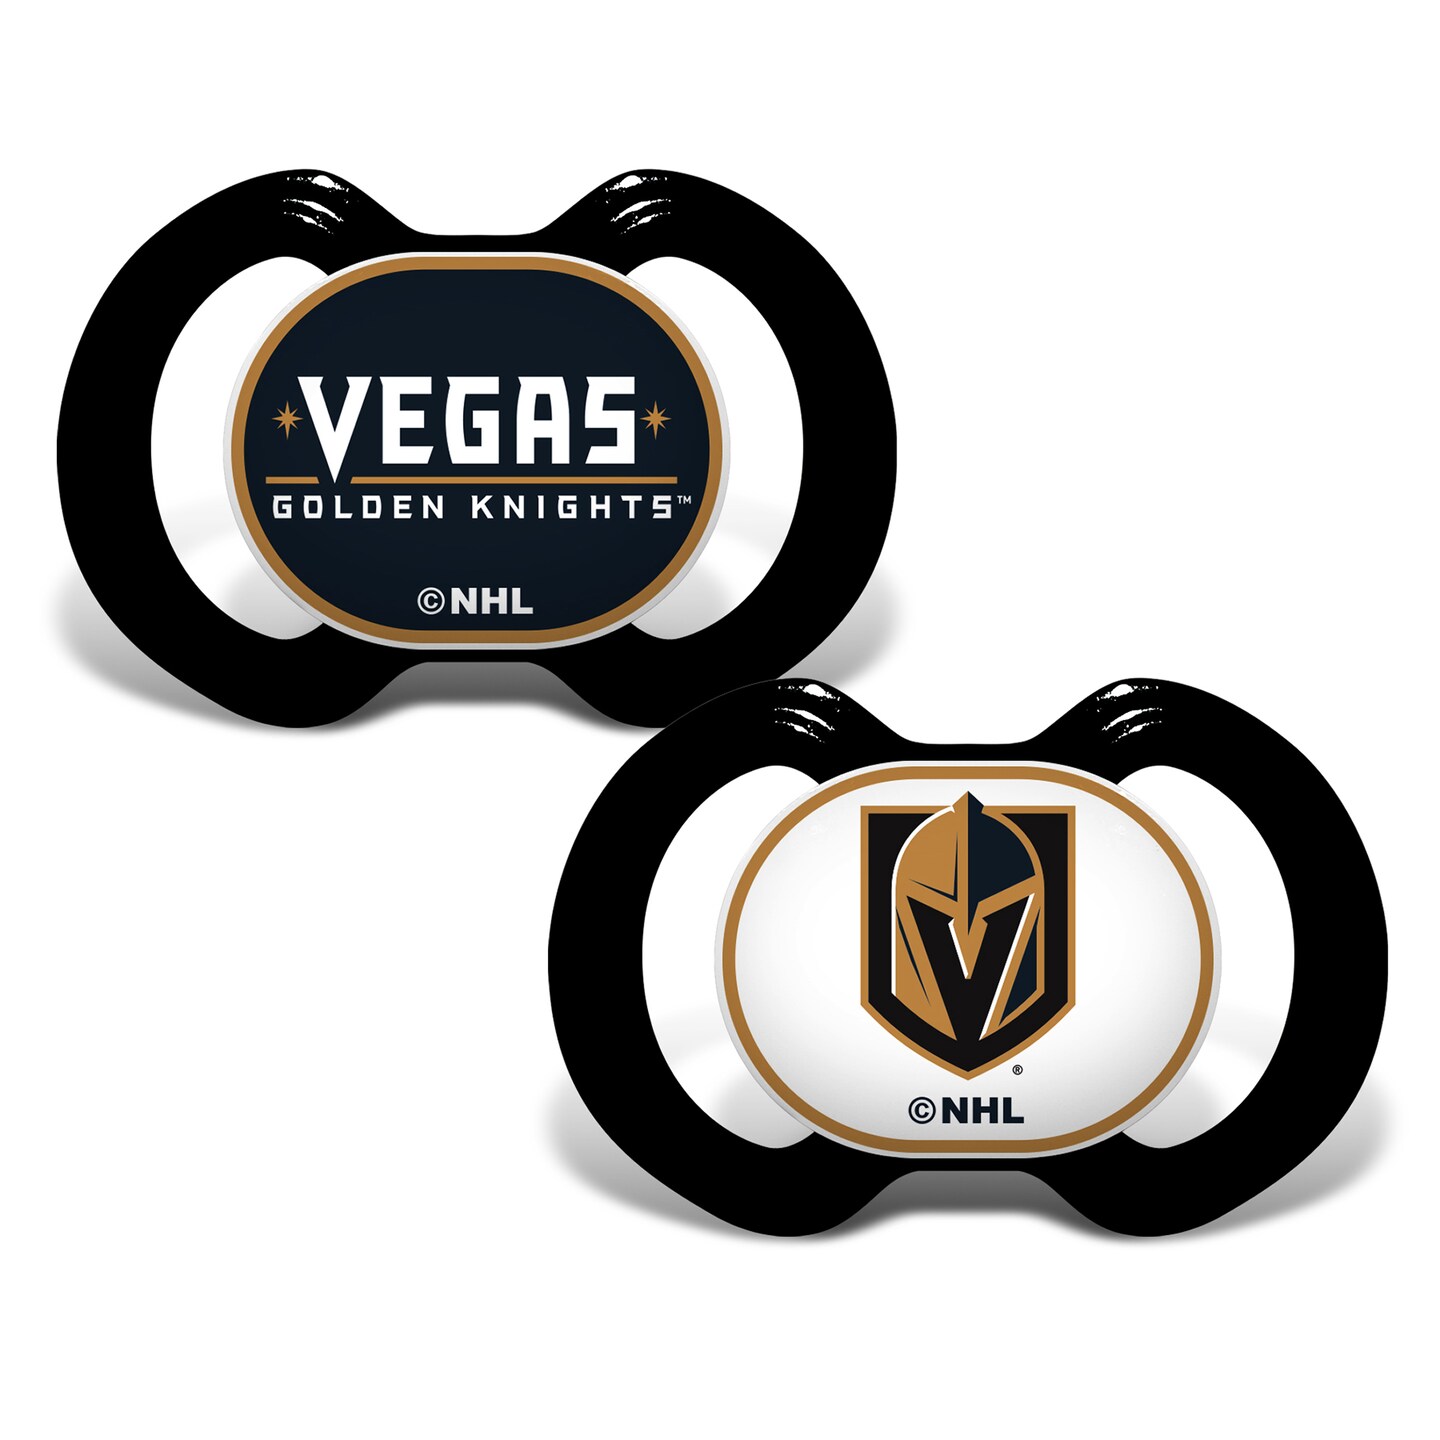 Vegas Golden Knights Gear